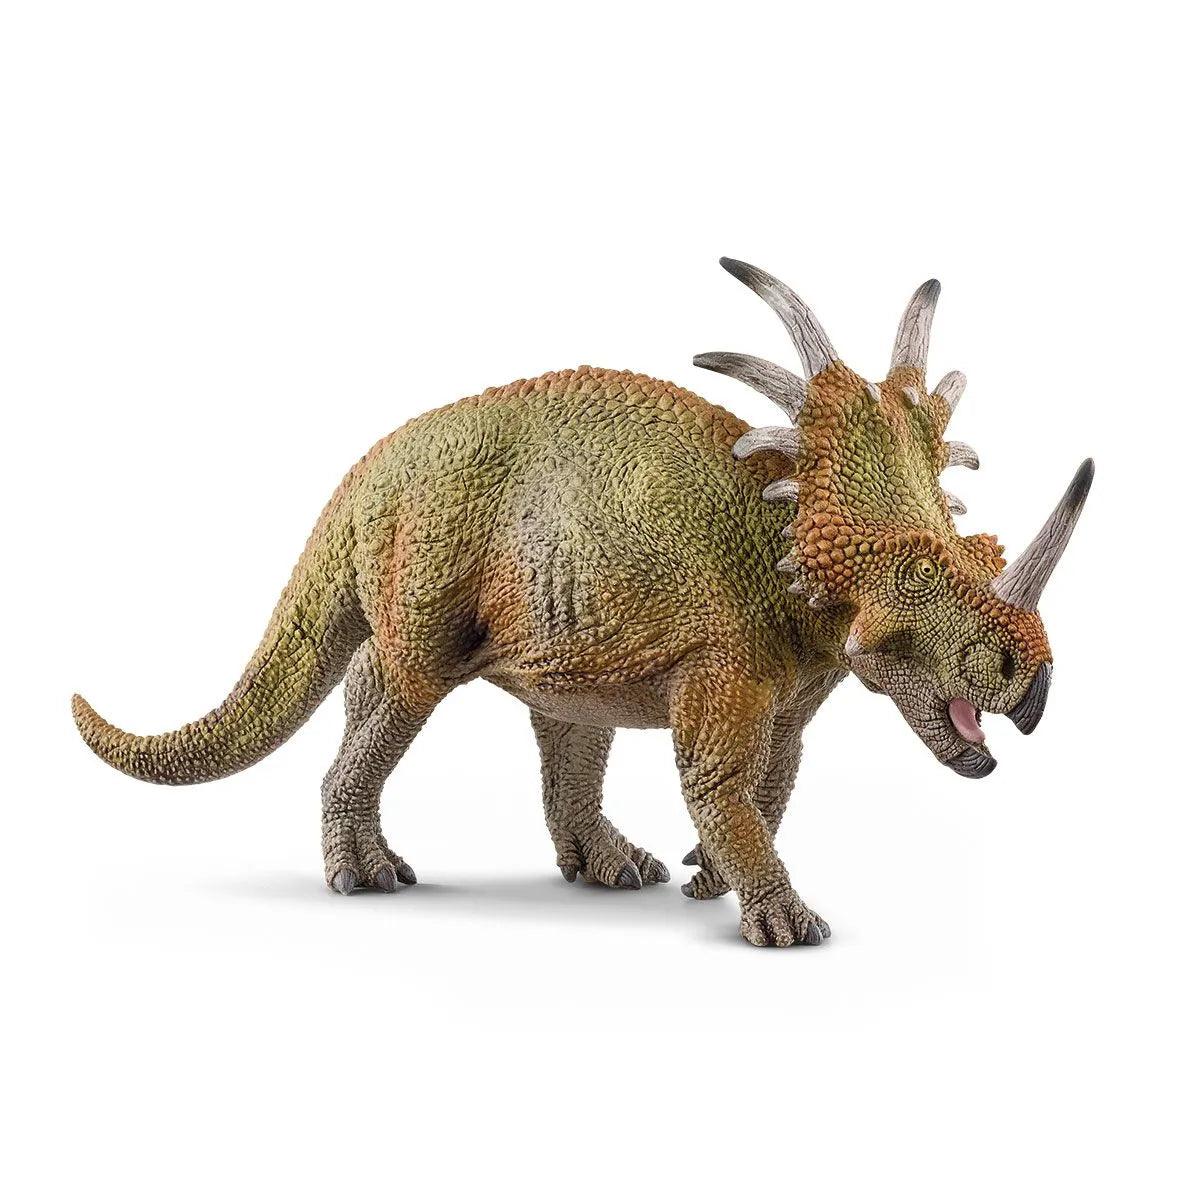 Styracosaure - Dinosaure - La Ribouldingue